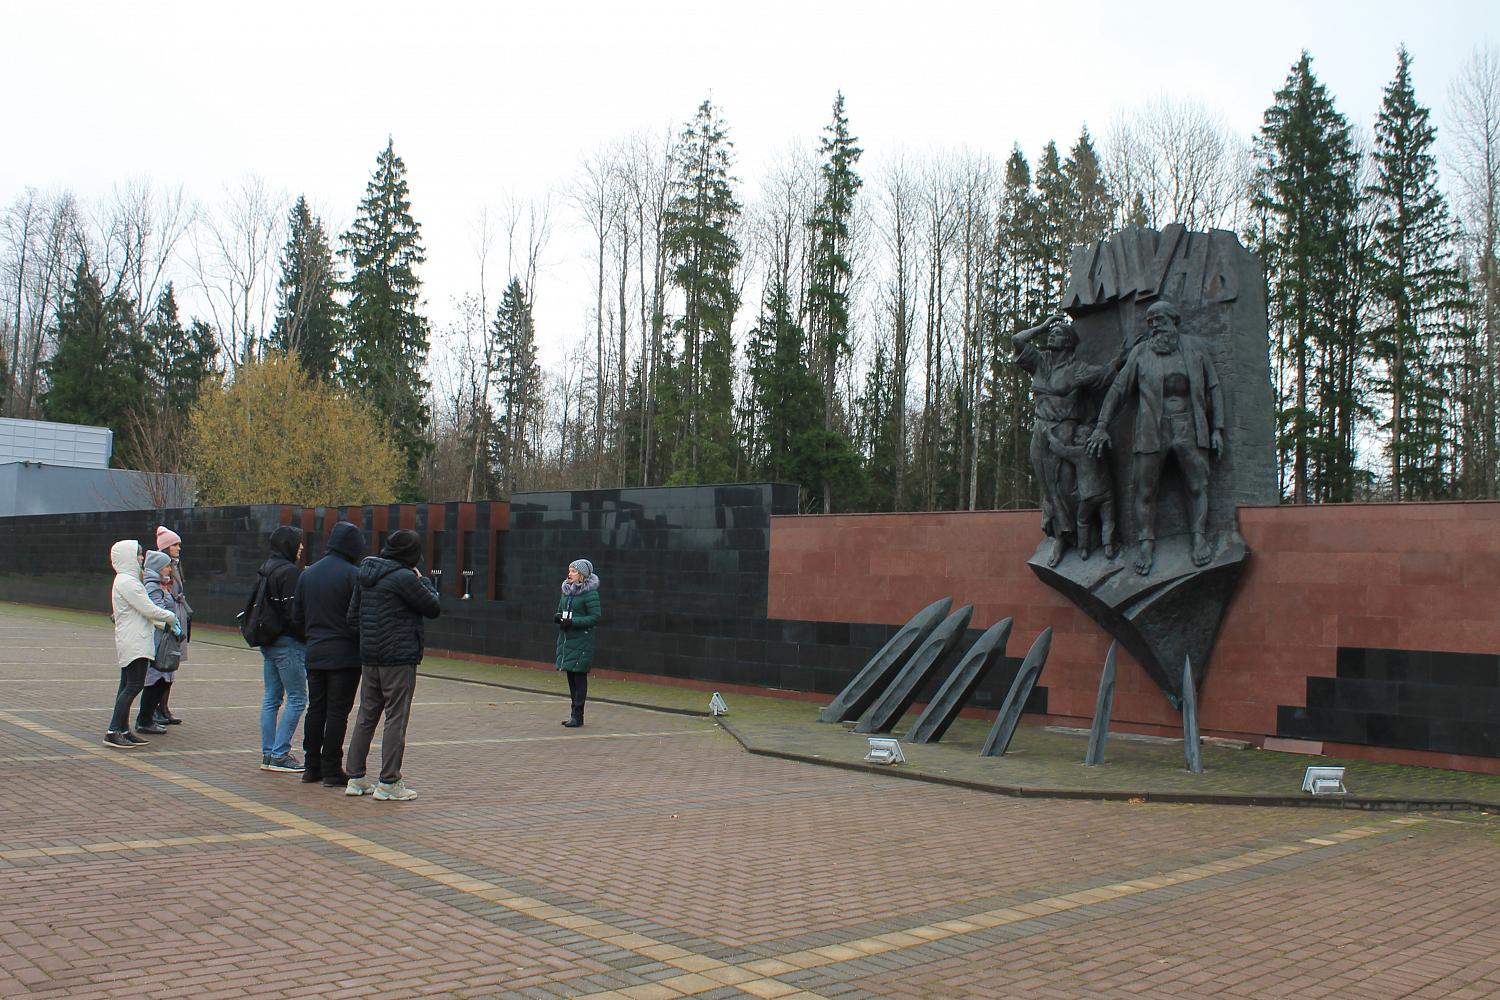 Работники Брянского автомобильного завода посетили Мемориальный комплекс «Хацунь»